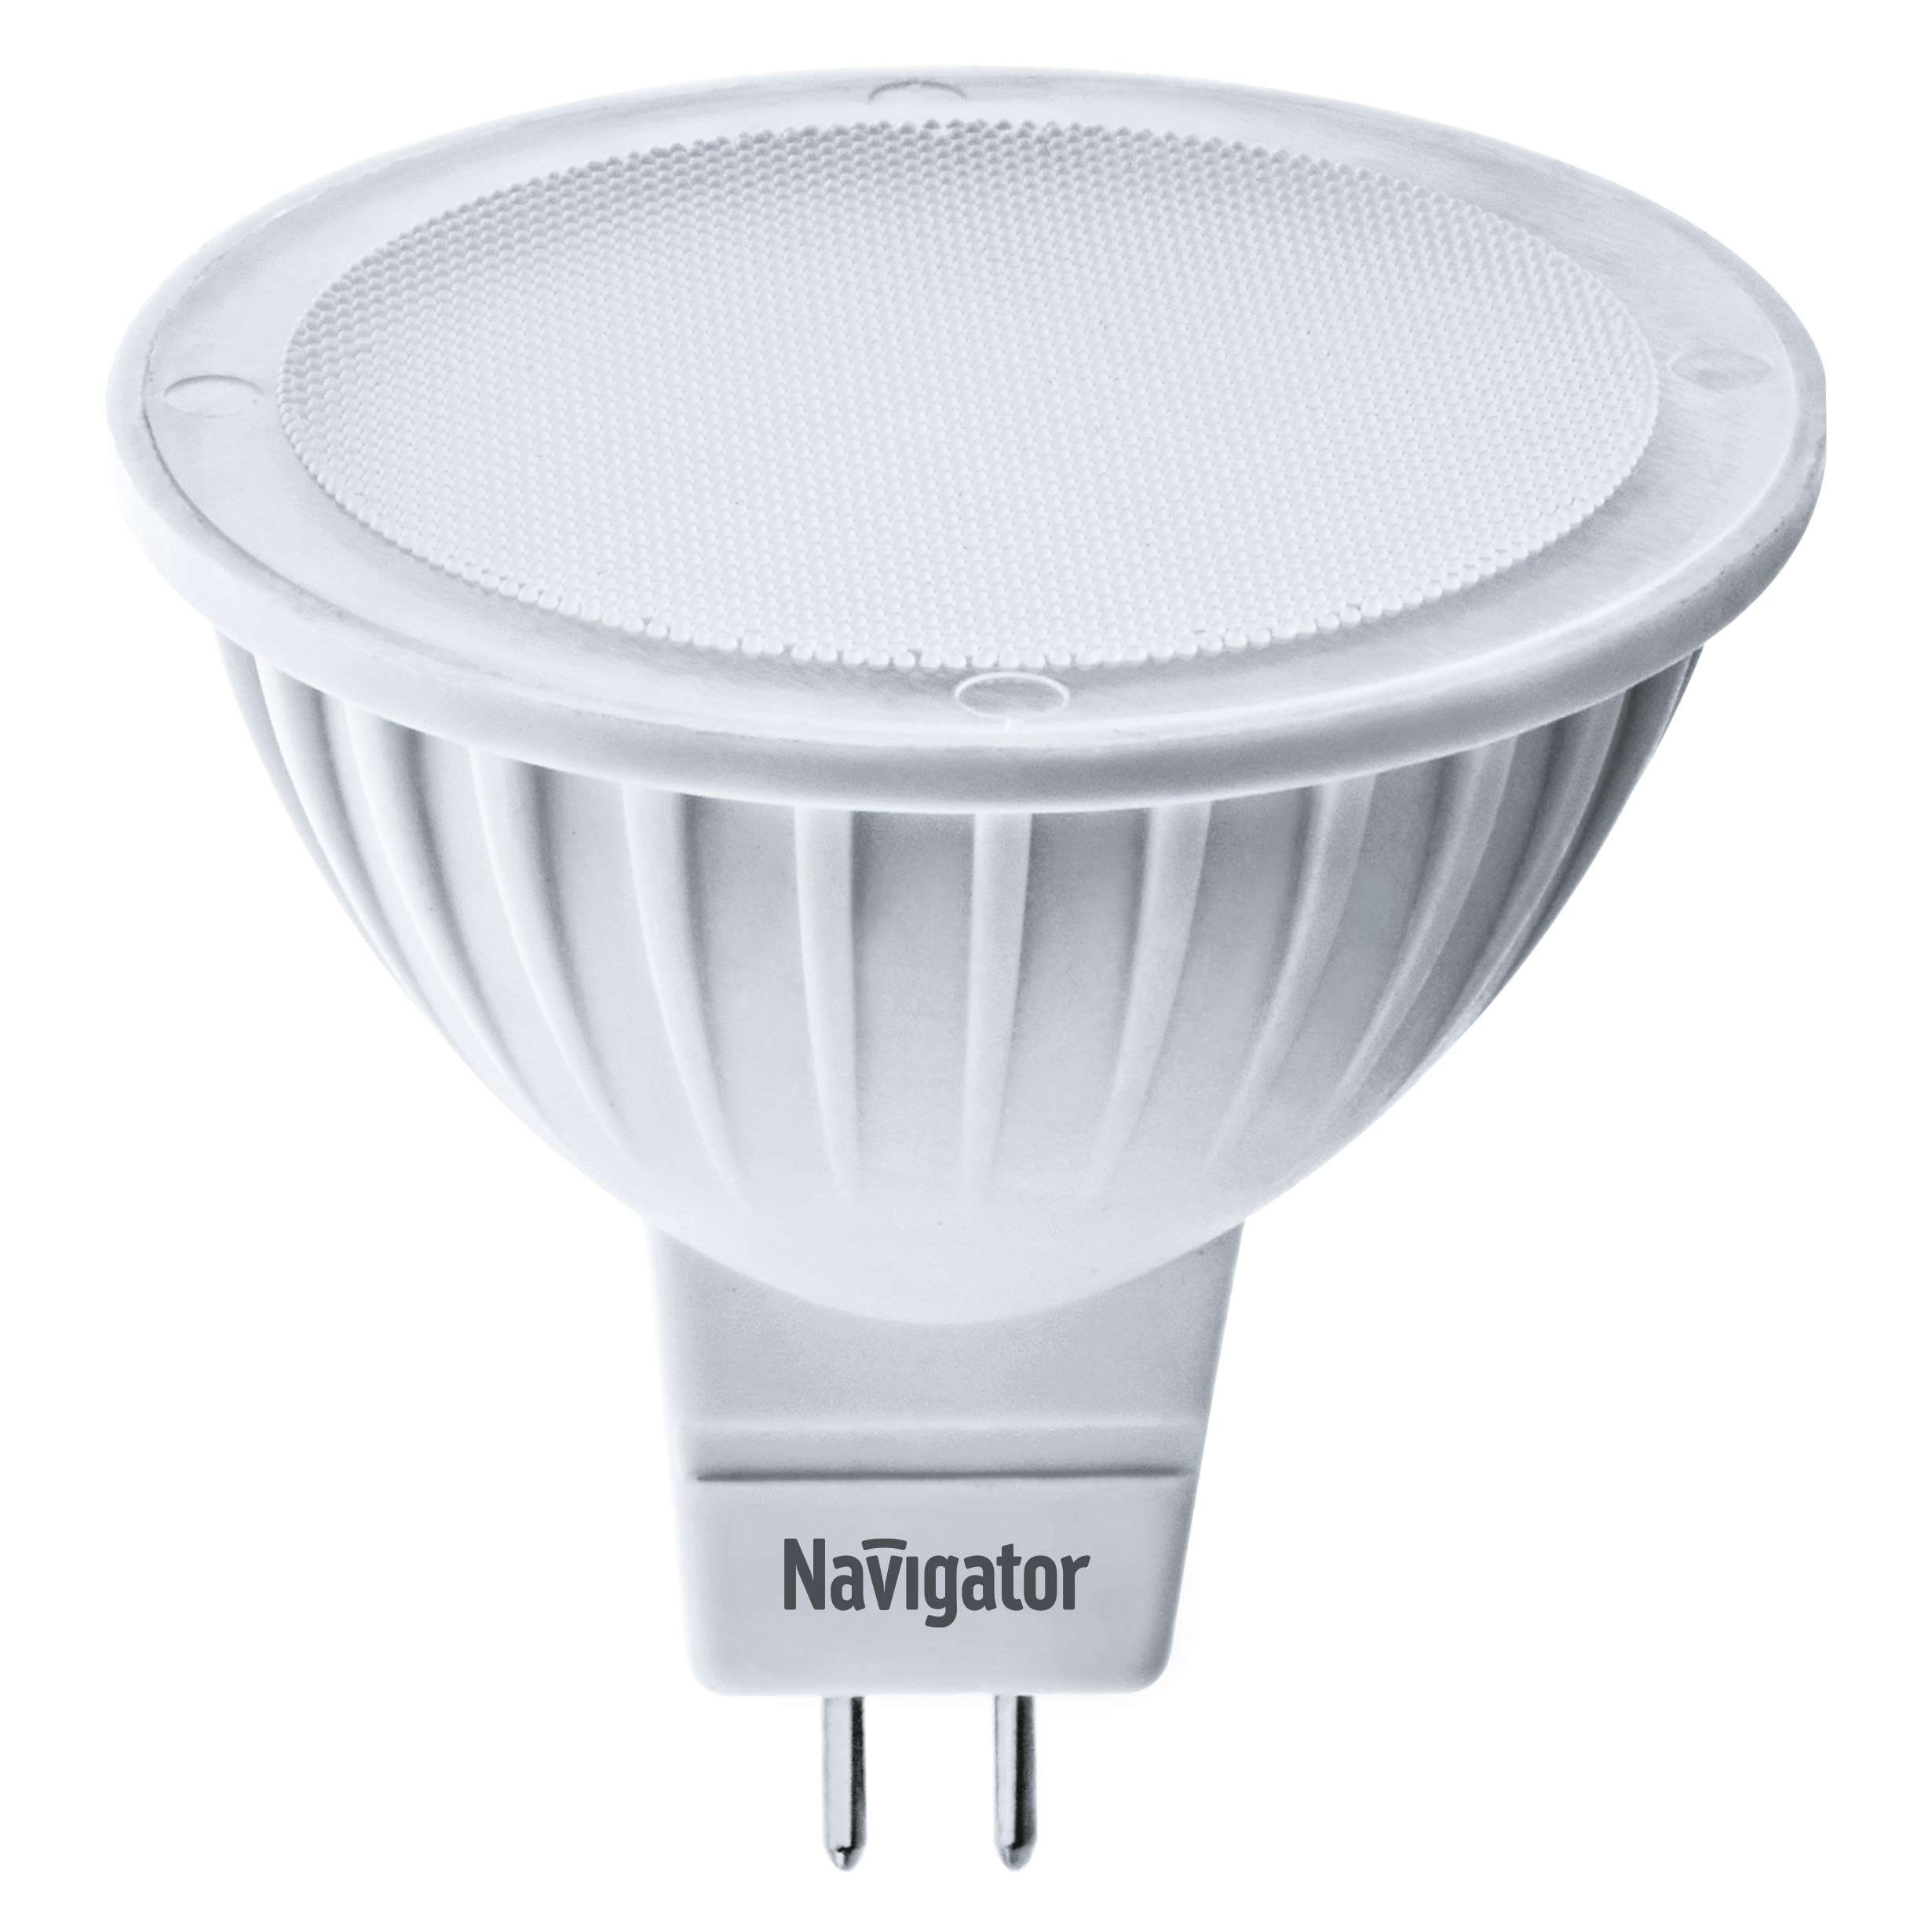 Лампа светодиодная Navigator MR16 5Вт 230В цоколь GU5.3 (холодный свет) лампа светодиодная эра led smd mr16 4w 840 gu5 3 10 100 4000